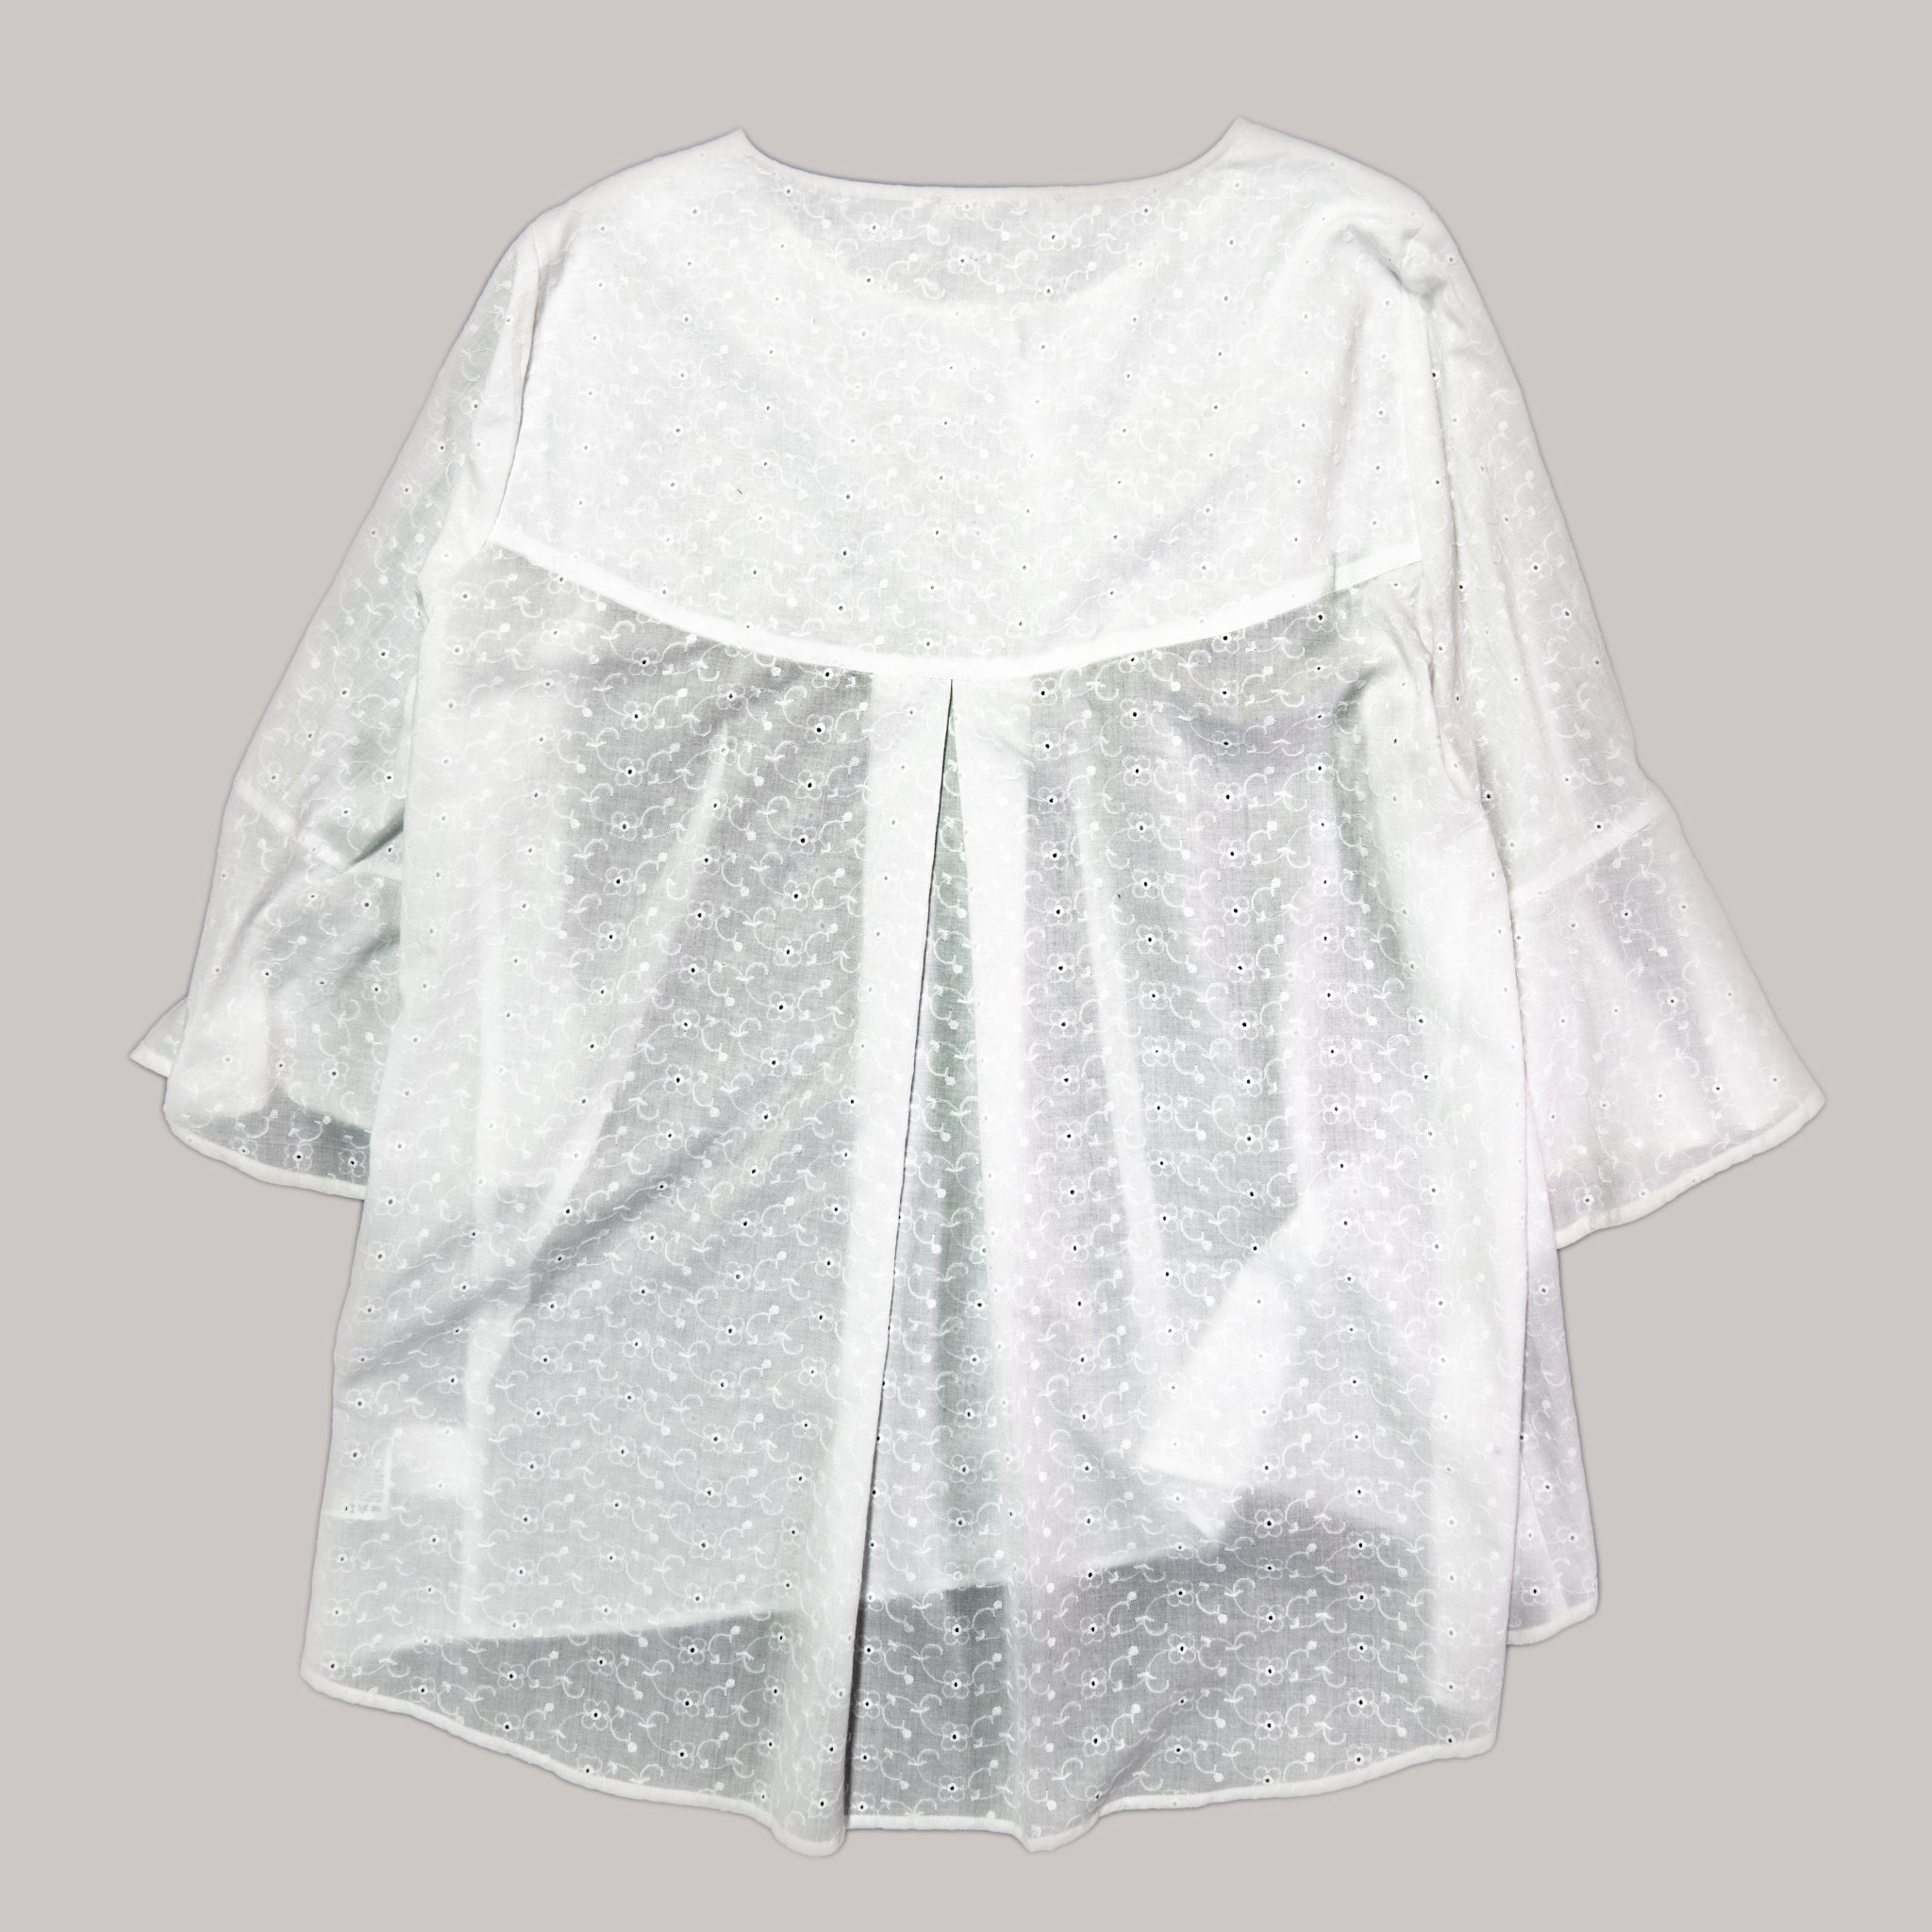 Bluza alba Sangalo / White Sangalo blouse